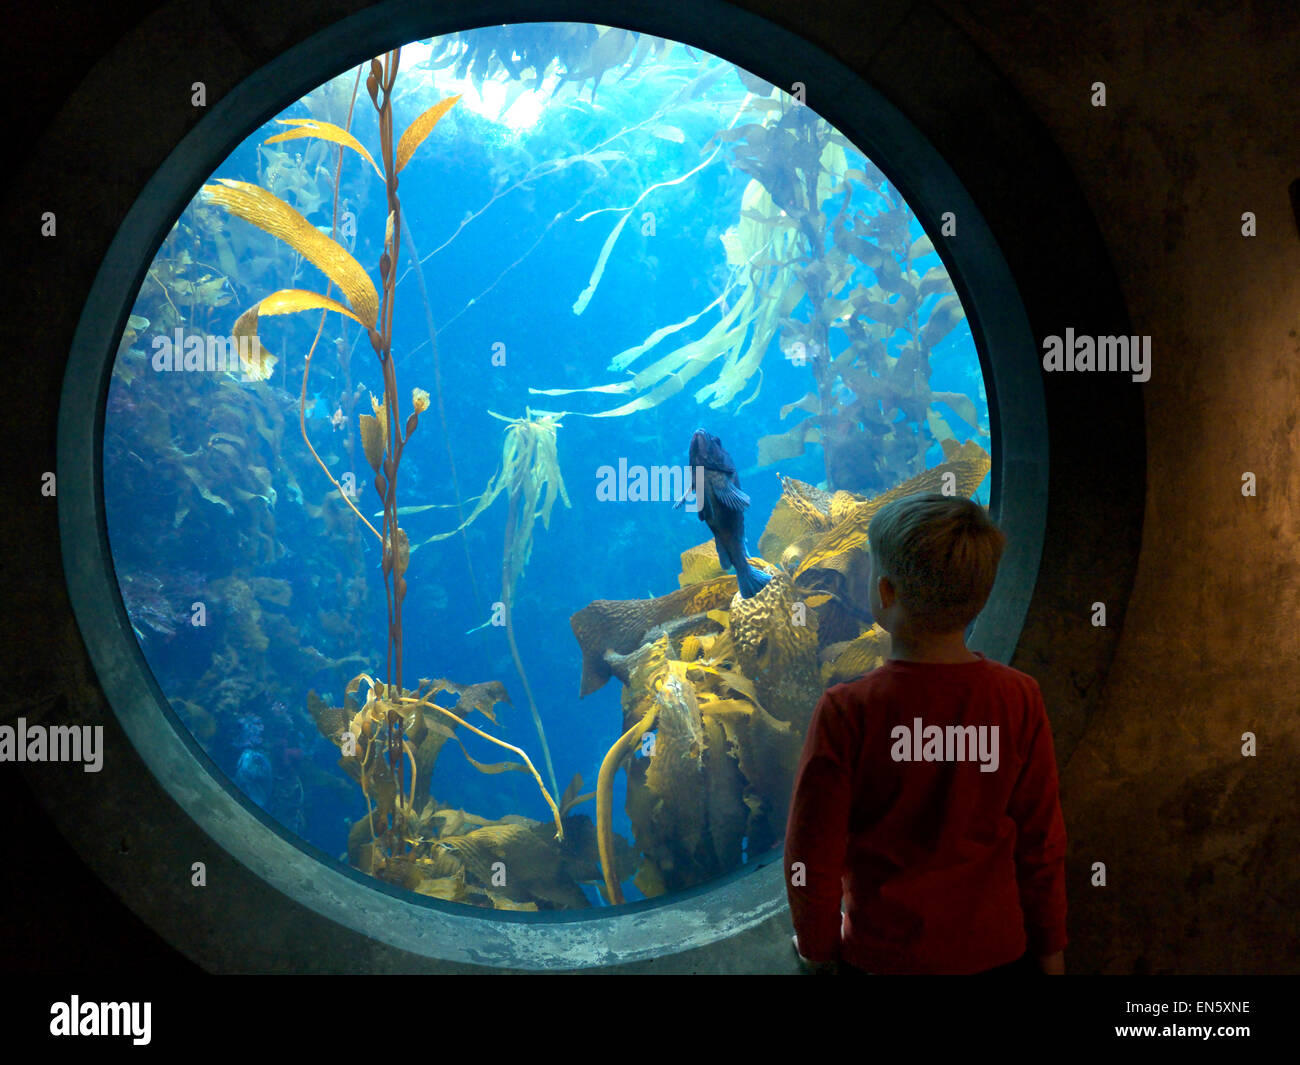 Pietre dell'acquario immagini e fotografie stock ad alta risoluzione - Alamy